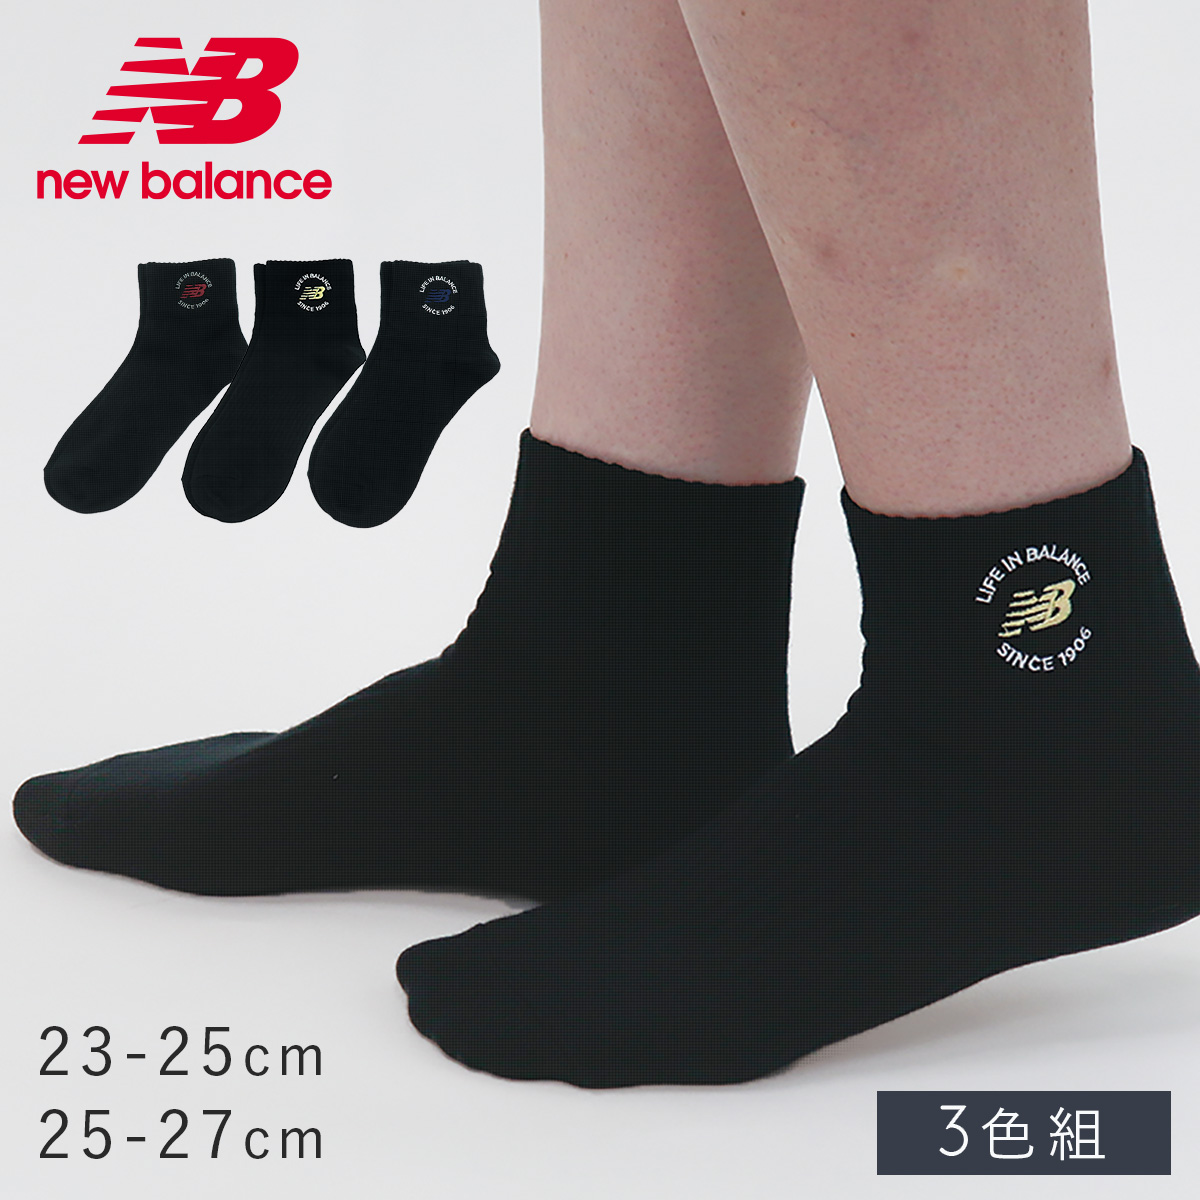 靴下 メンズ 3色組 25-27cm new balance ニューバランス レディース ニューバランス刺繍ソックス | ココチのくらし雑貨店